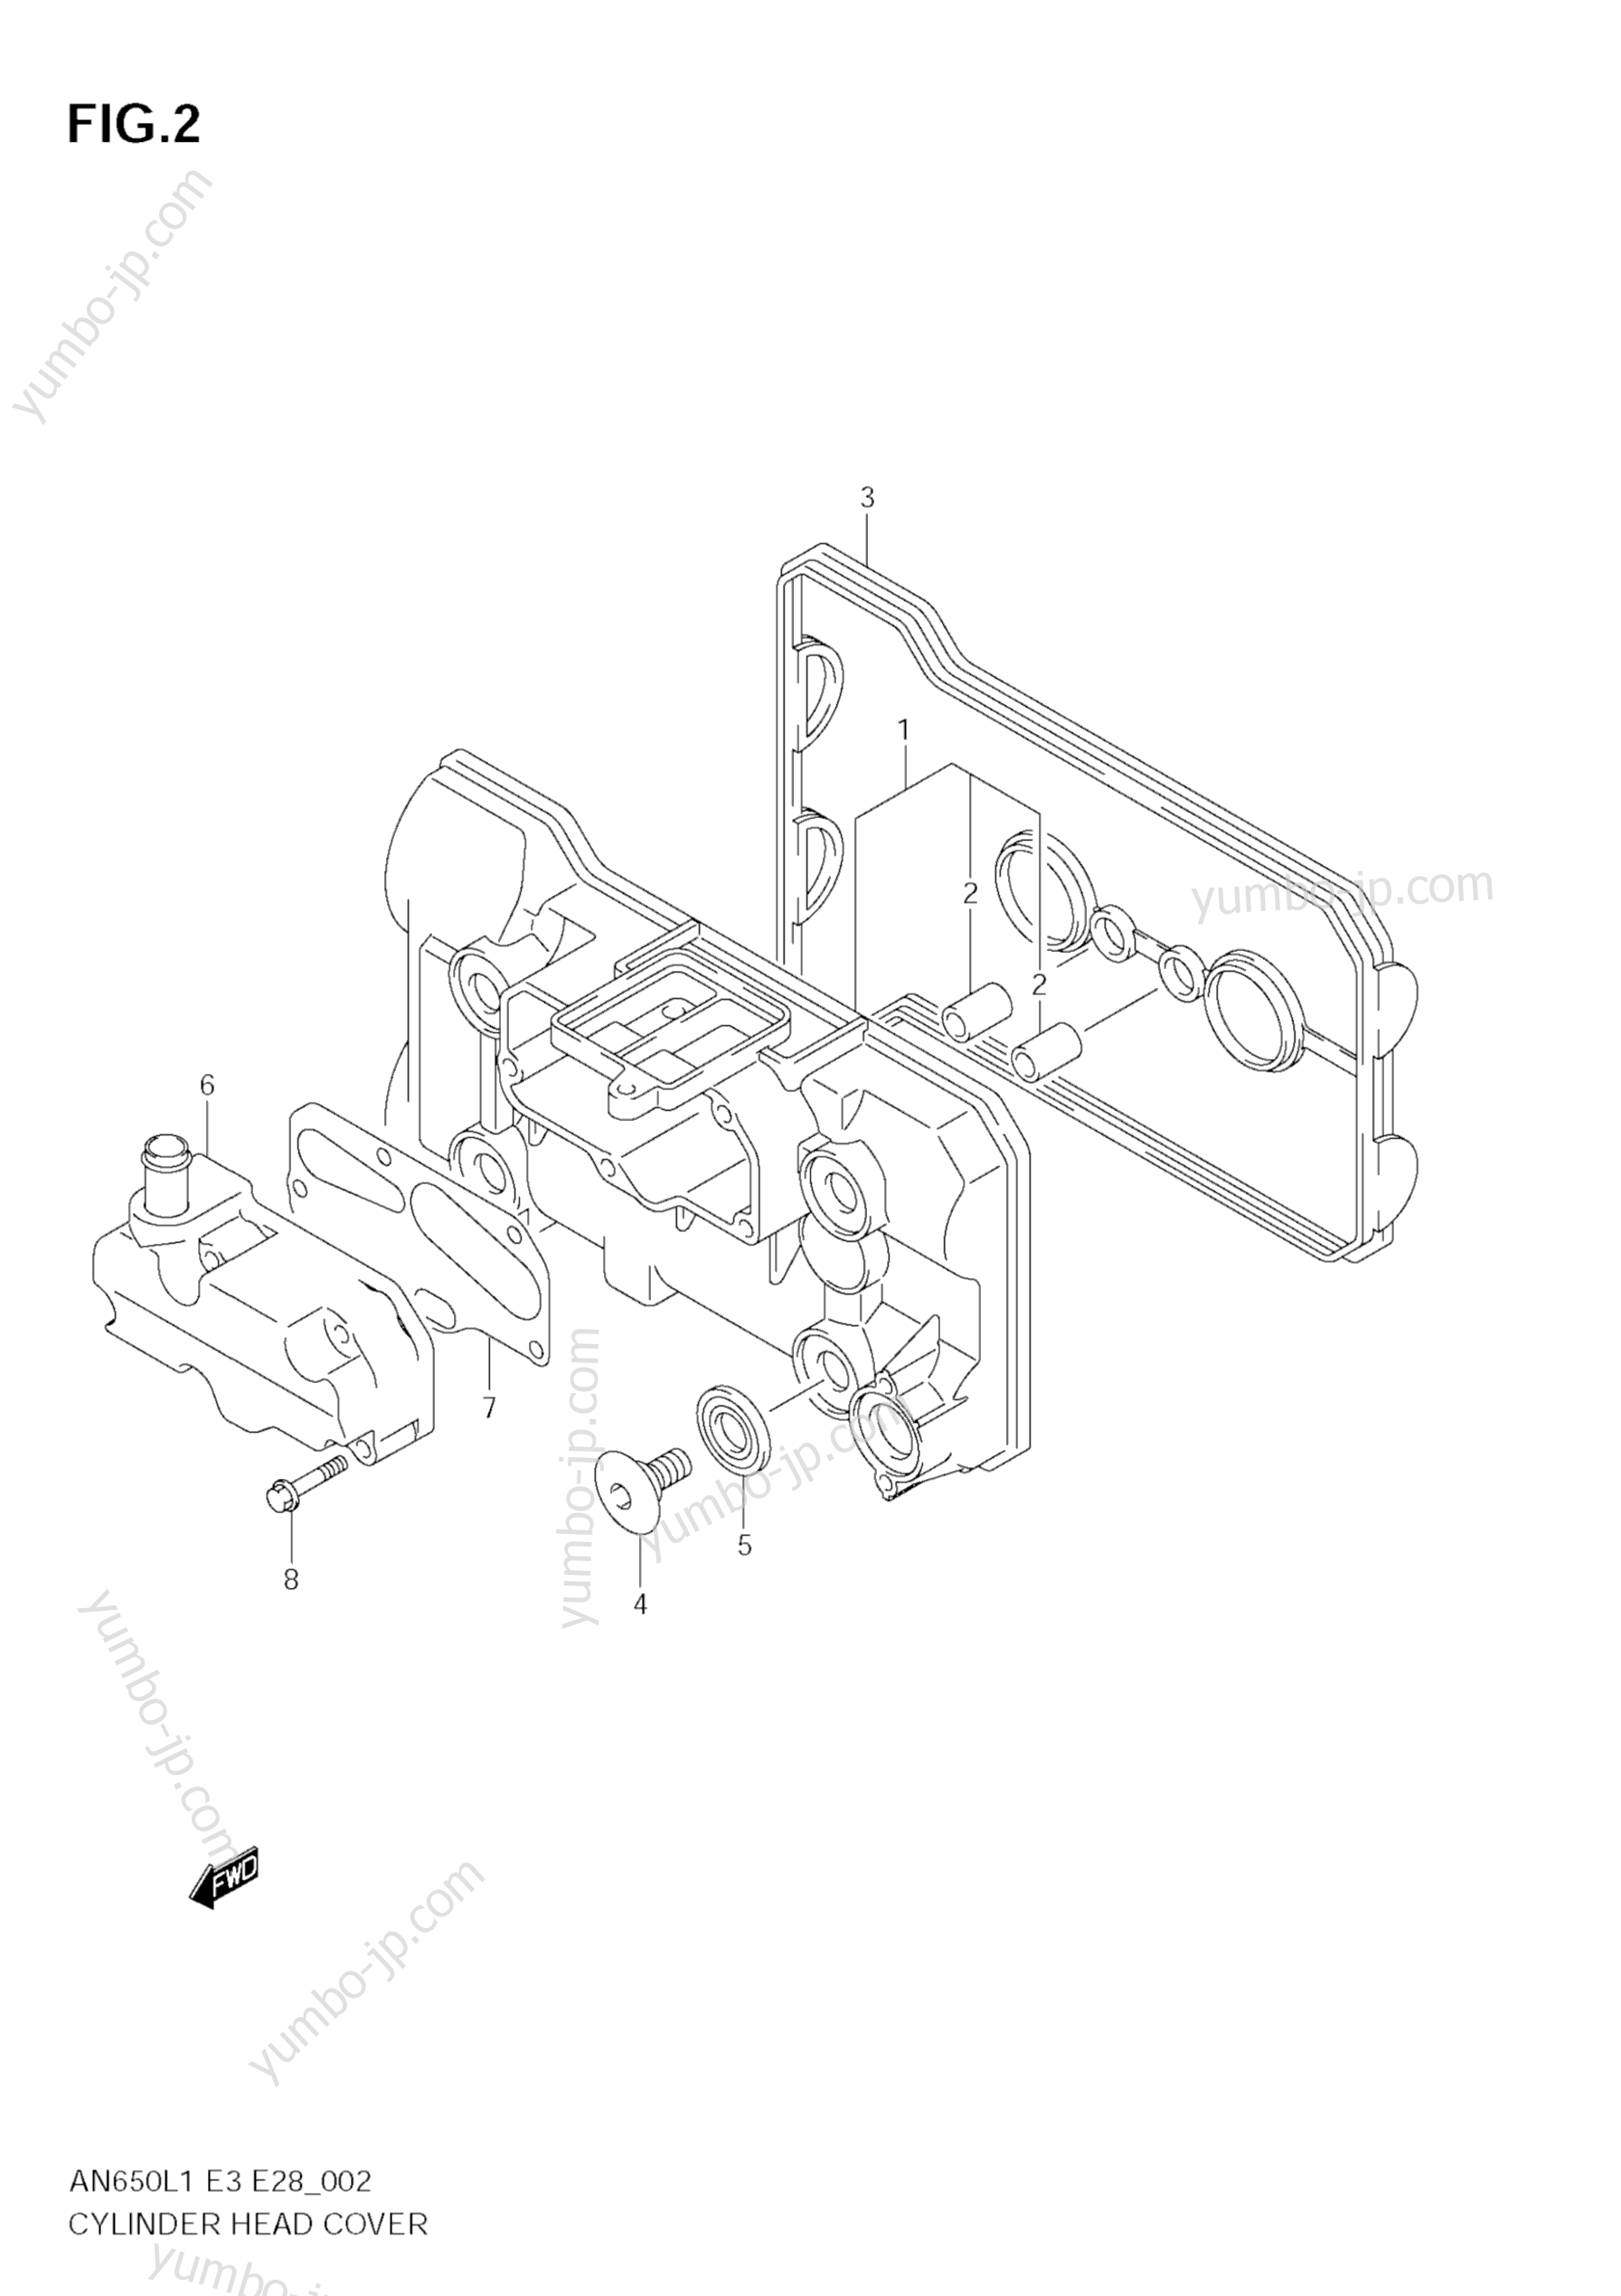 Крышка головки блока цилиндров для скутеров SUZUKI Burgman (AN650) 2011 г.